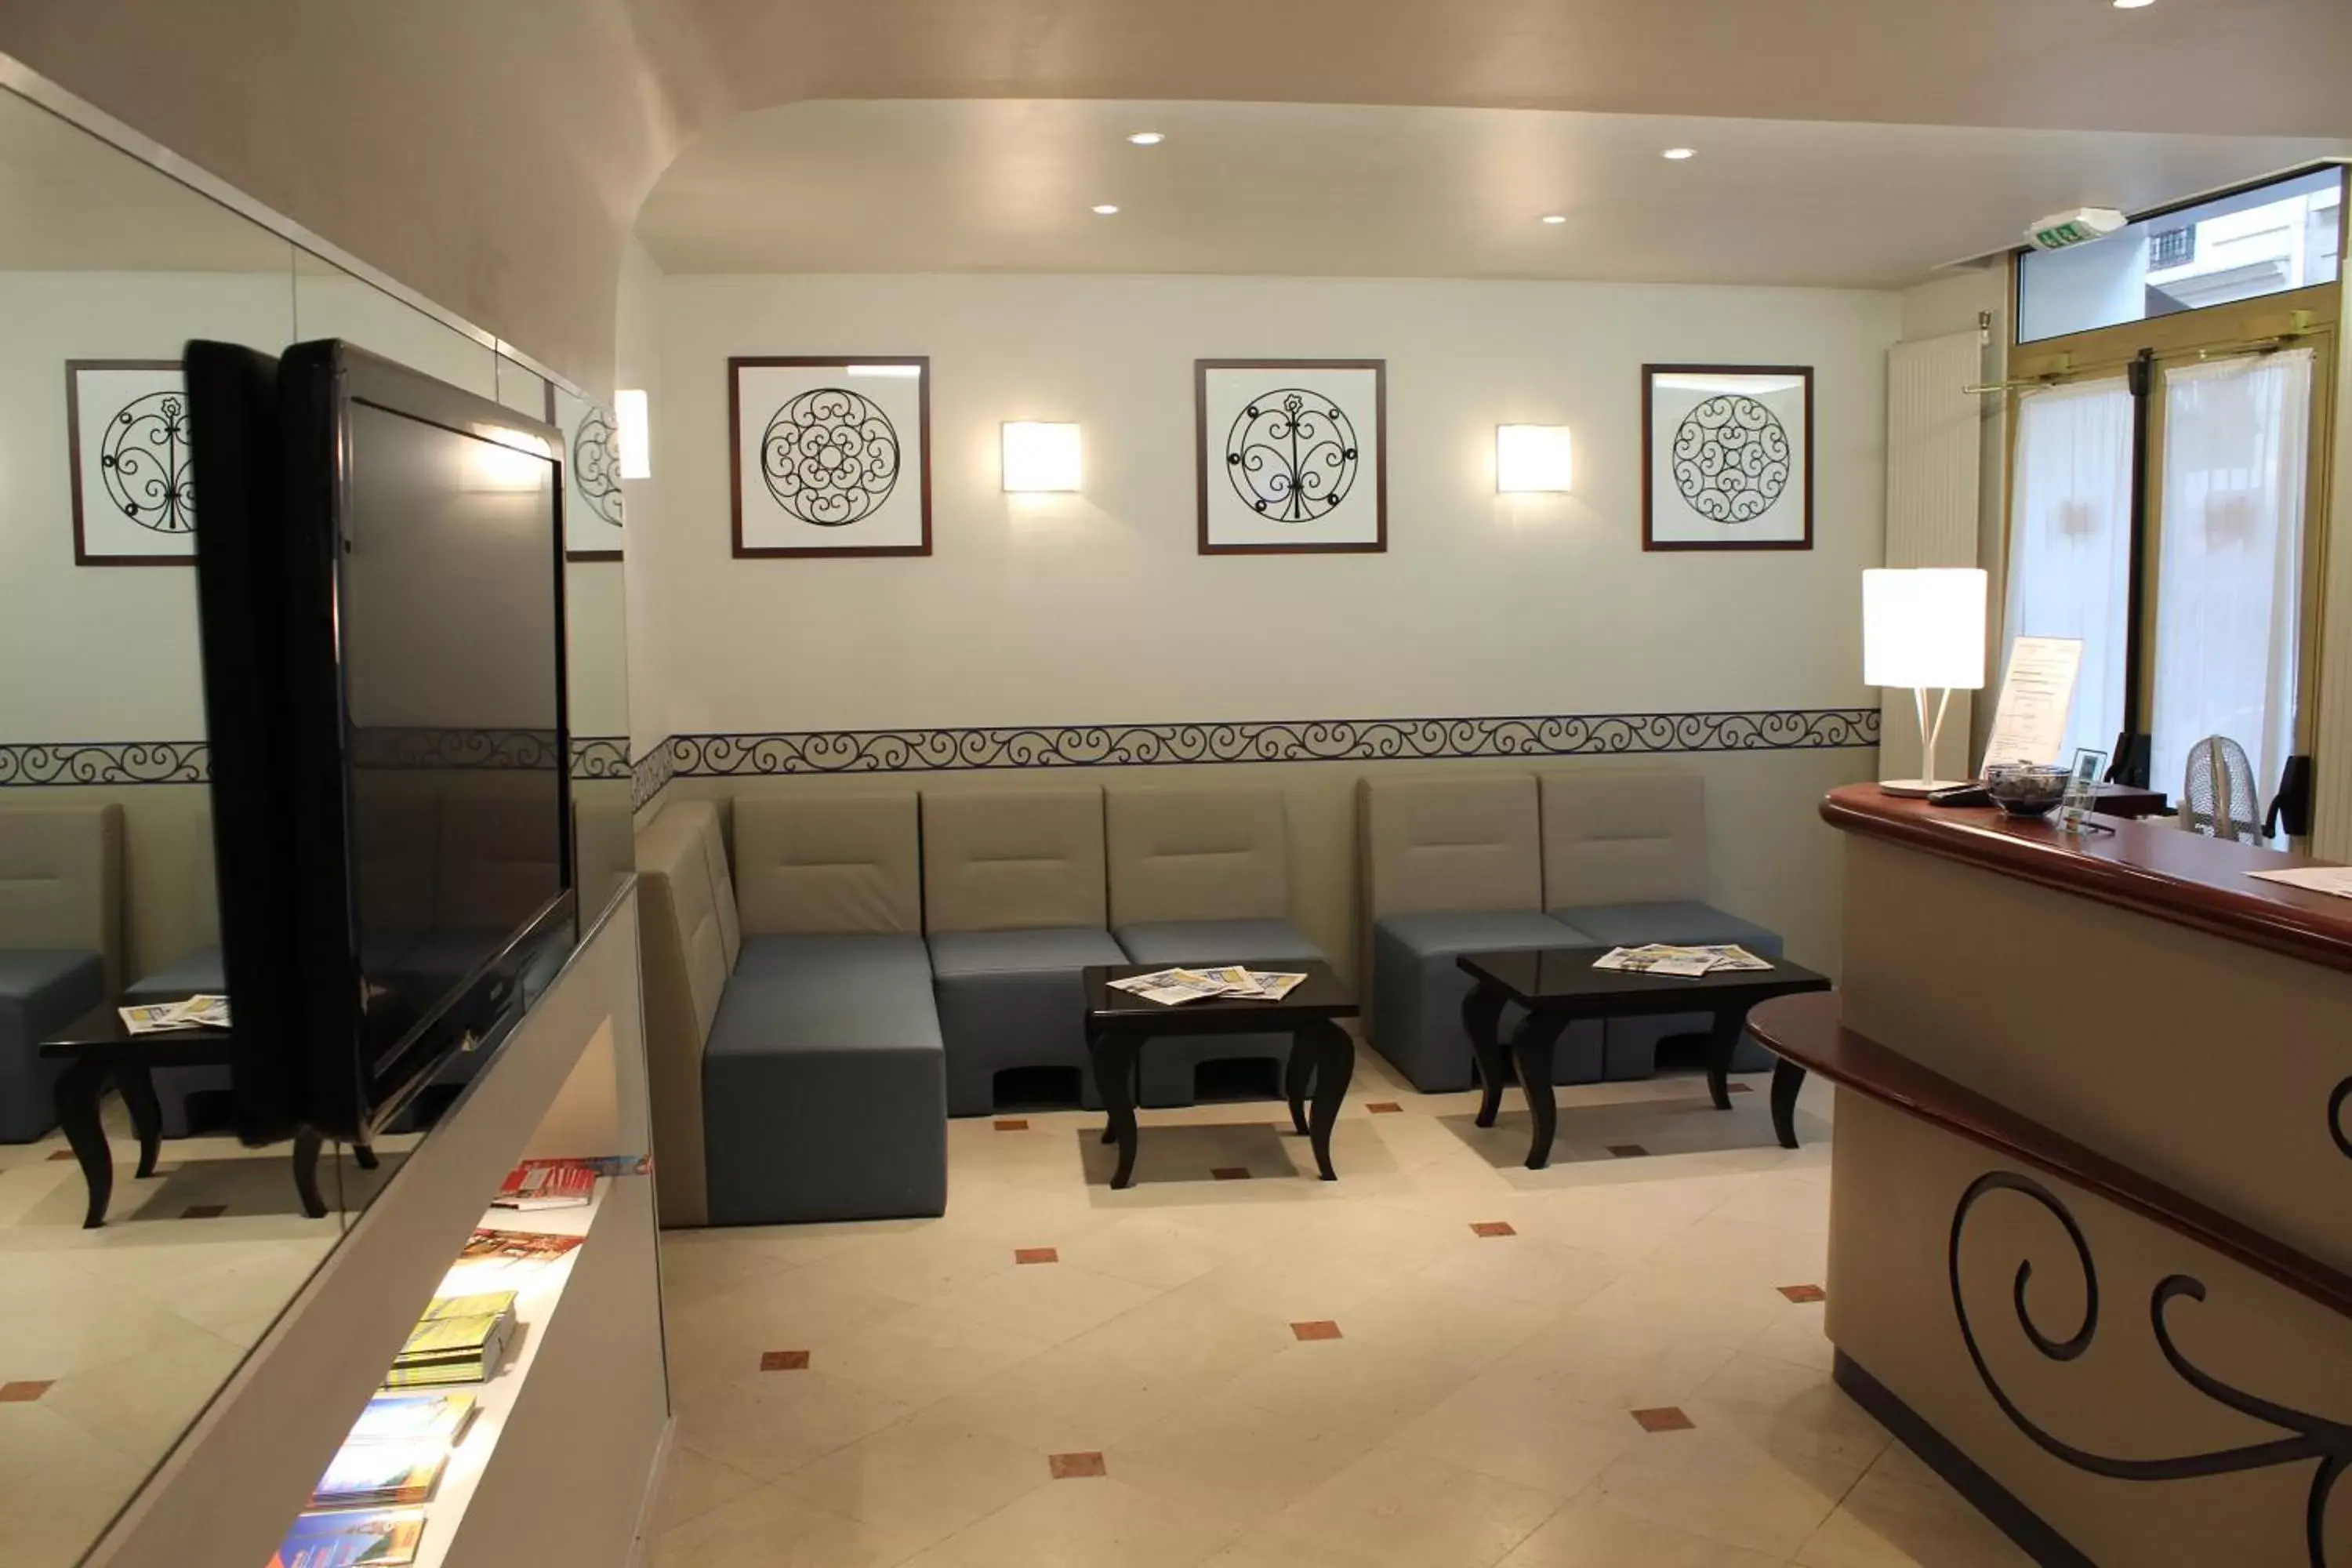 Lobby or reception in Kyriad Hotel XIII Italie Gobelins